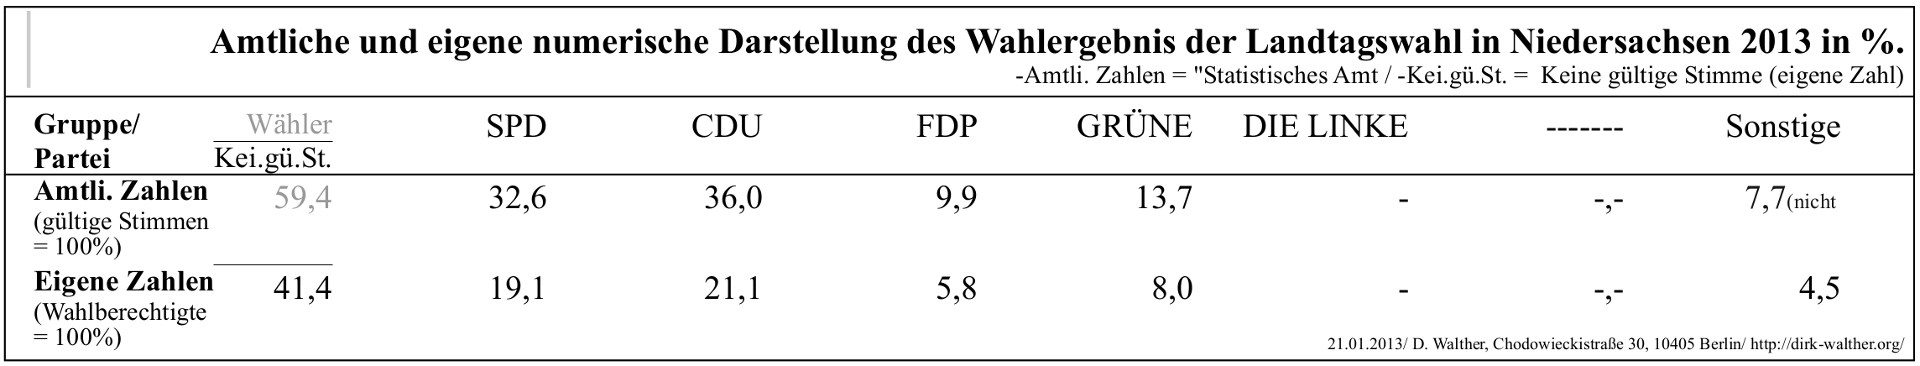 BRD Landtagswahl in Niedersachsen am 20.01.2013 mit Nichtwählern